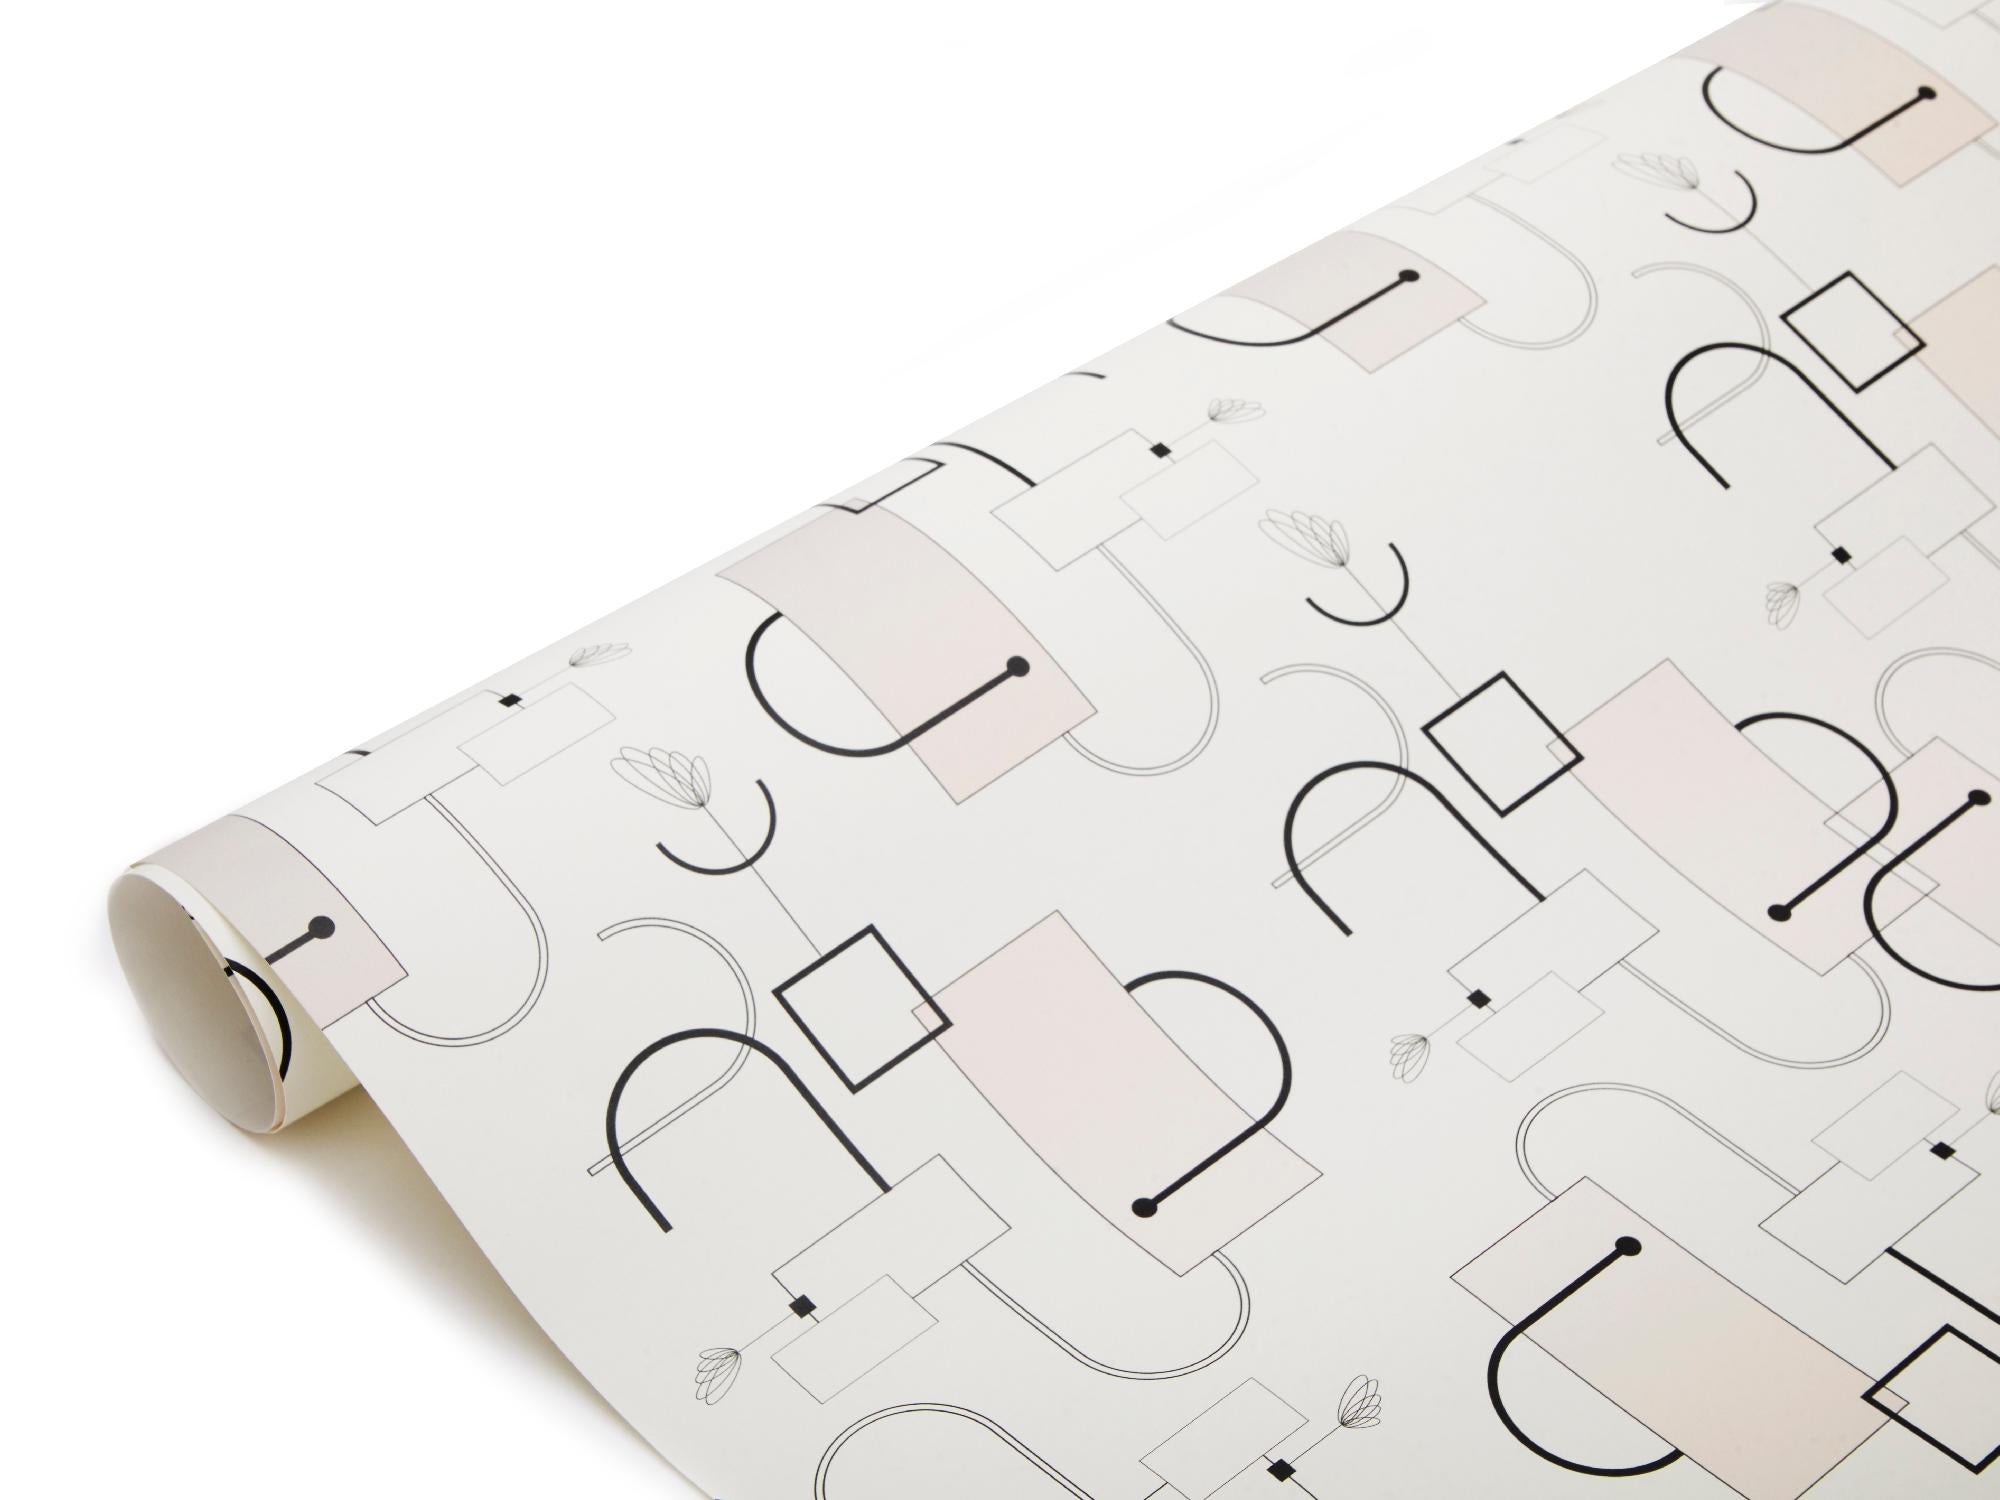 Die von der Textildesignerin und Künstlerin Alicia Reina in Zusammenarbeit mit Bianco Light + Space entworfene Tapete Connect Wallpaper ist ein abstrakter Ausdruck technischer Elemente, die in elektrischen Systemen verwendet werden.

Farben: 1.